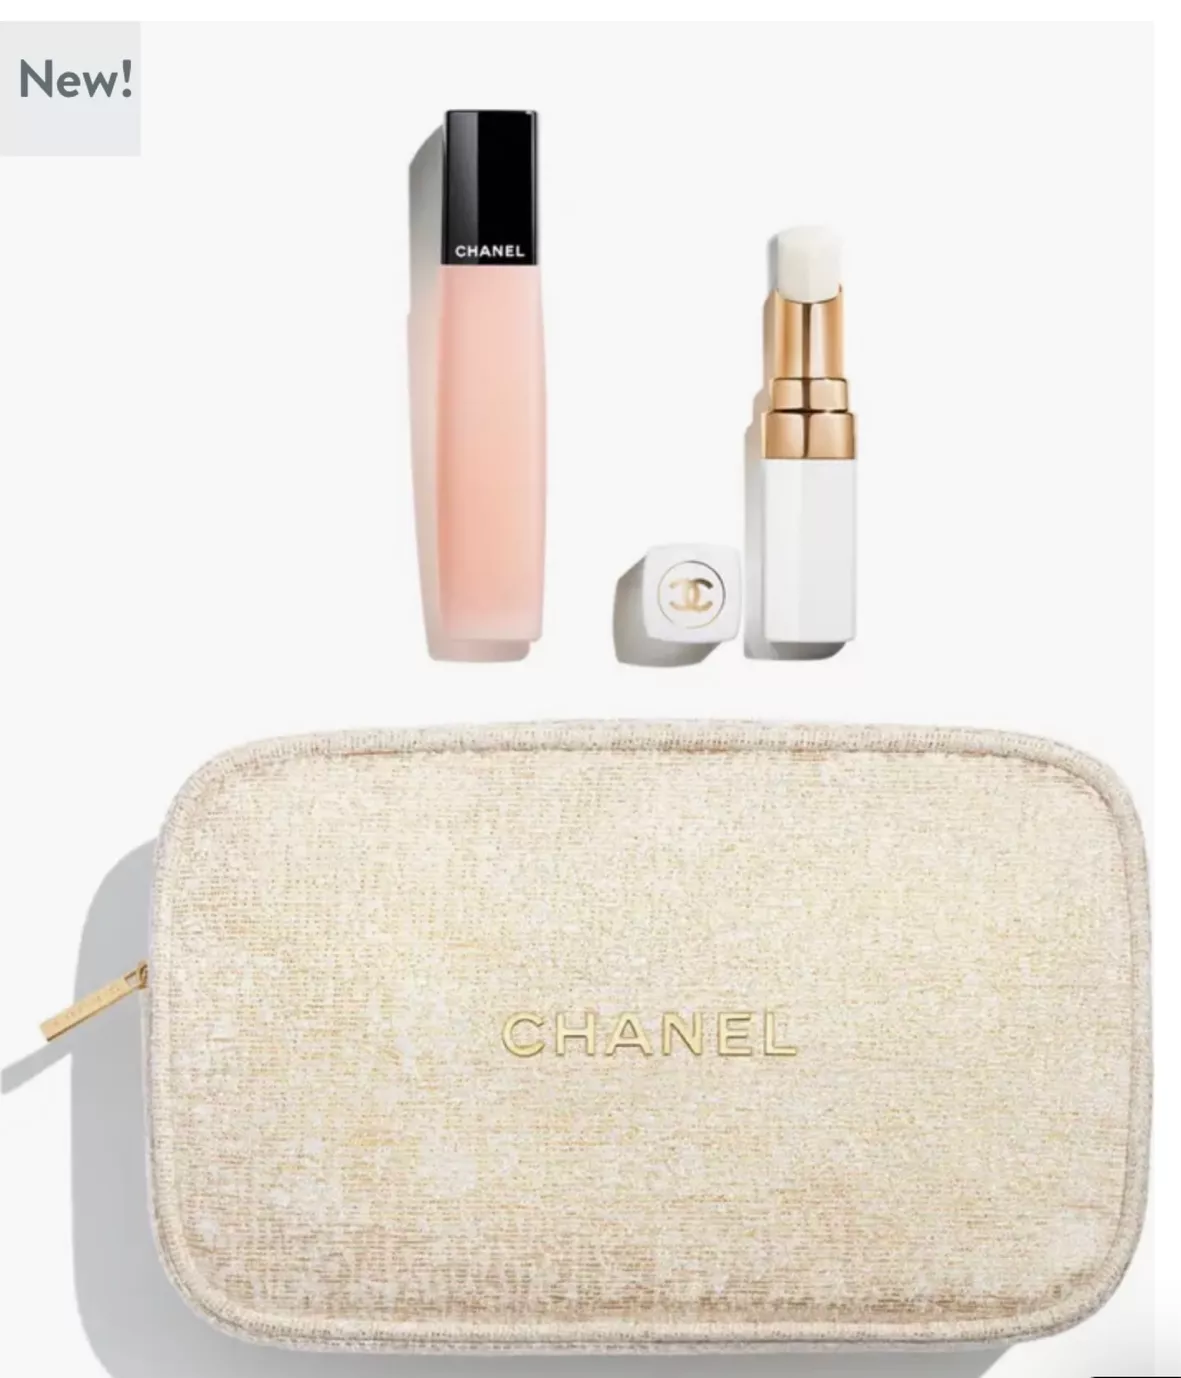 erikalaurenbennett's Chanel Travel Product Set on LTK